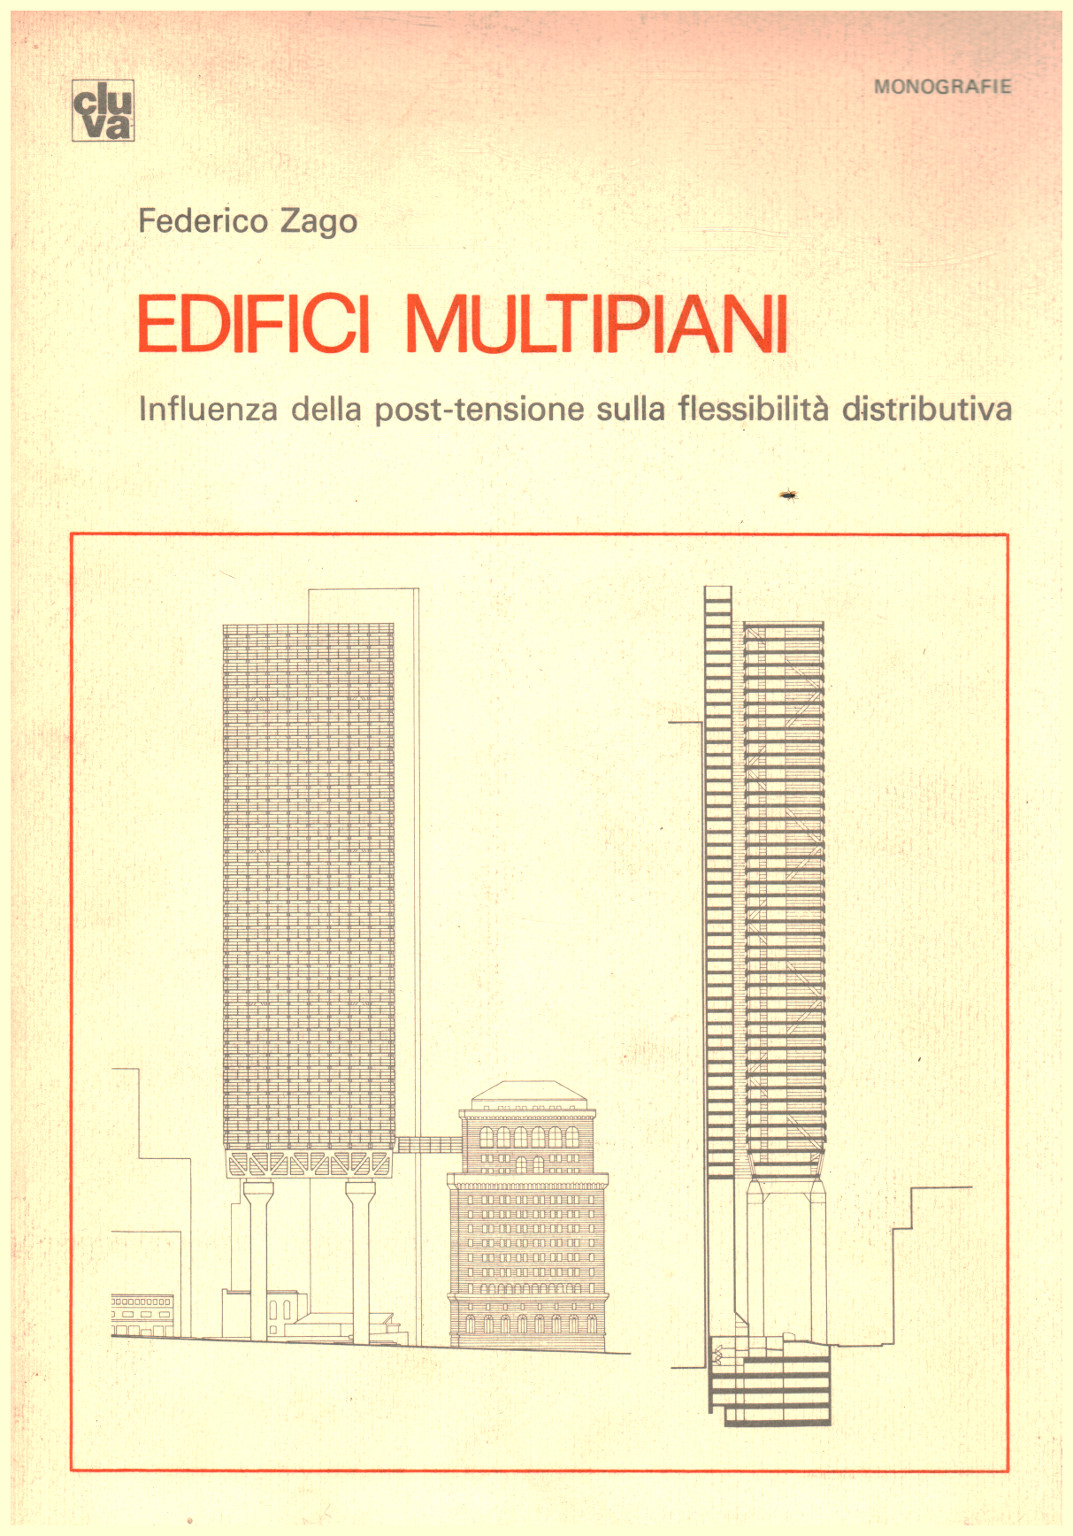 Edifici multipiani, s.a.